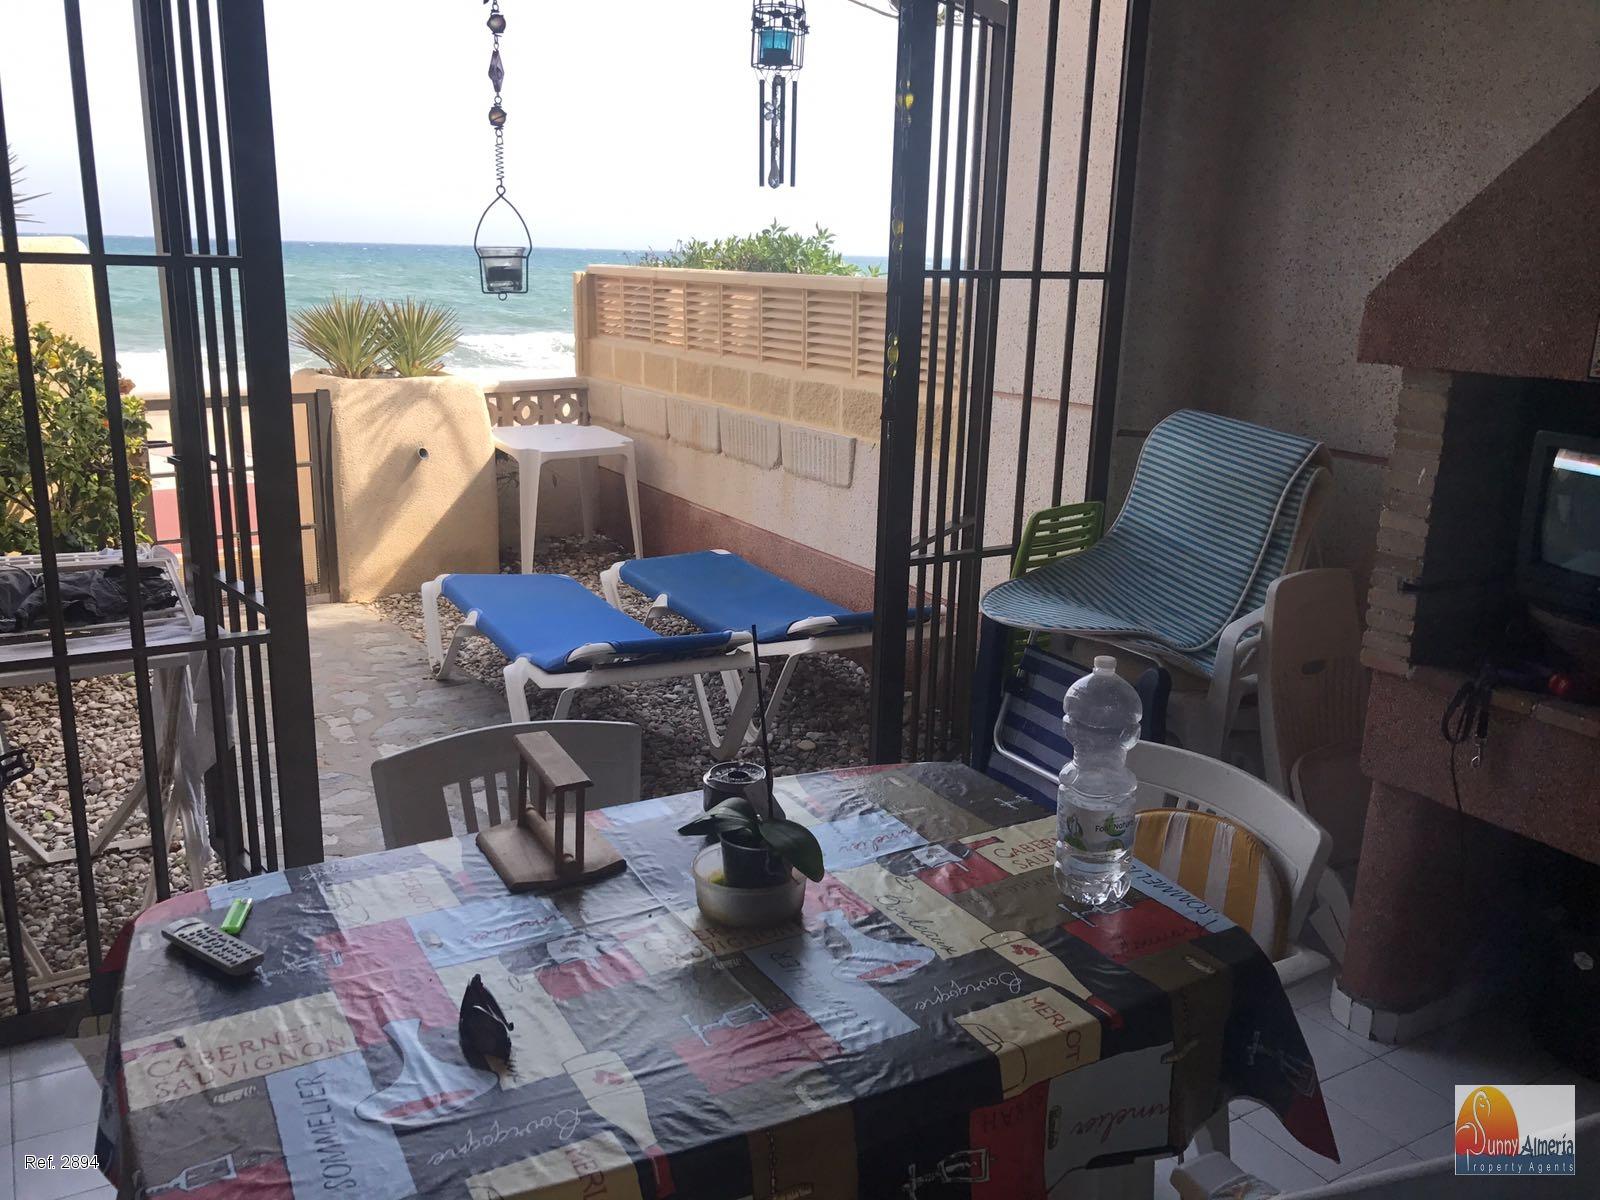 1 etages rækkehus udlejes på lang tid I Playa Serena (Roquetas de Mar), 900€/måned (årstid)